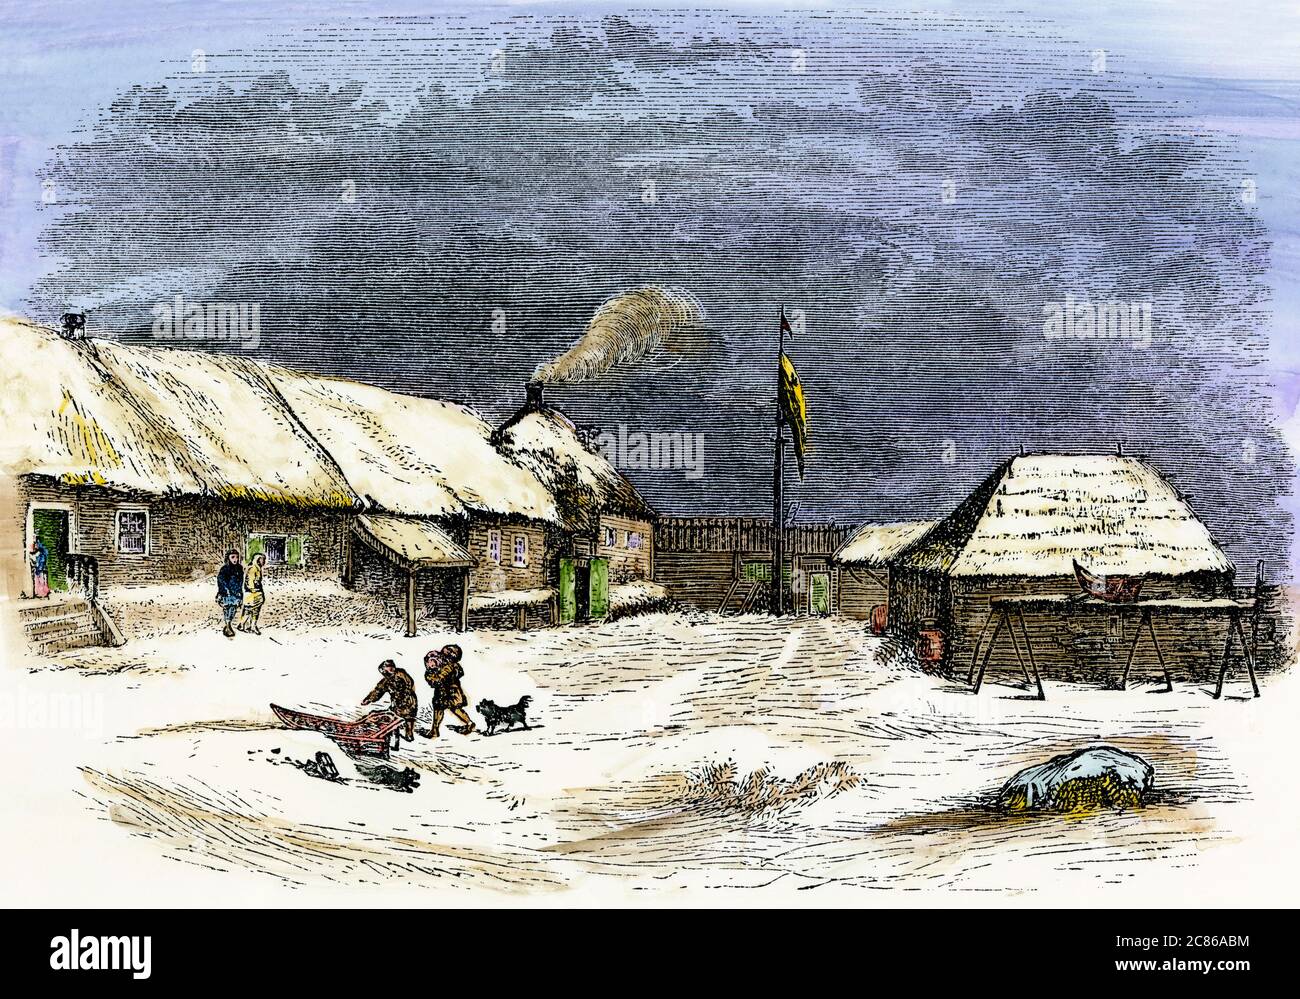 Avant-poste russe, Redoute St. Michael's sur Norton Sound, Alaska, milieu des années 1800. Coupe de bois de couleur main Banque D'Images